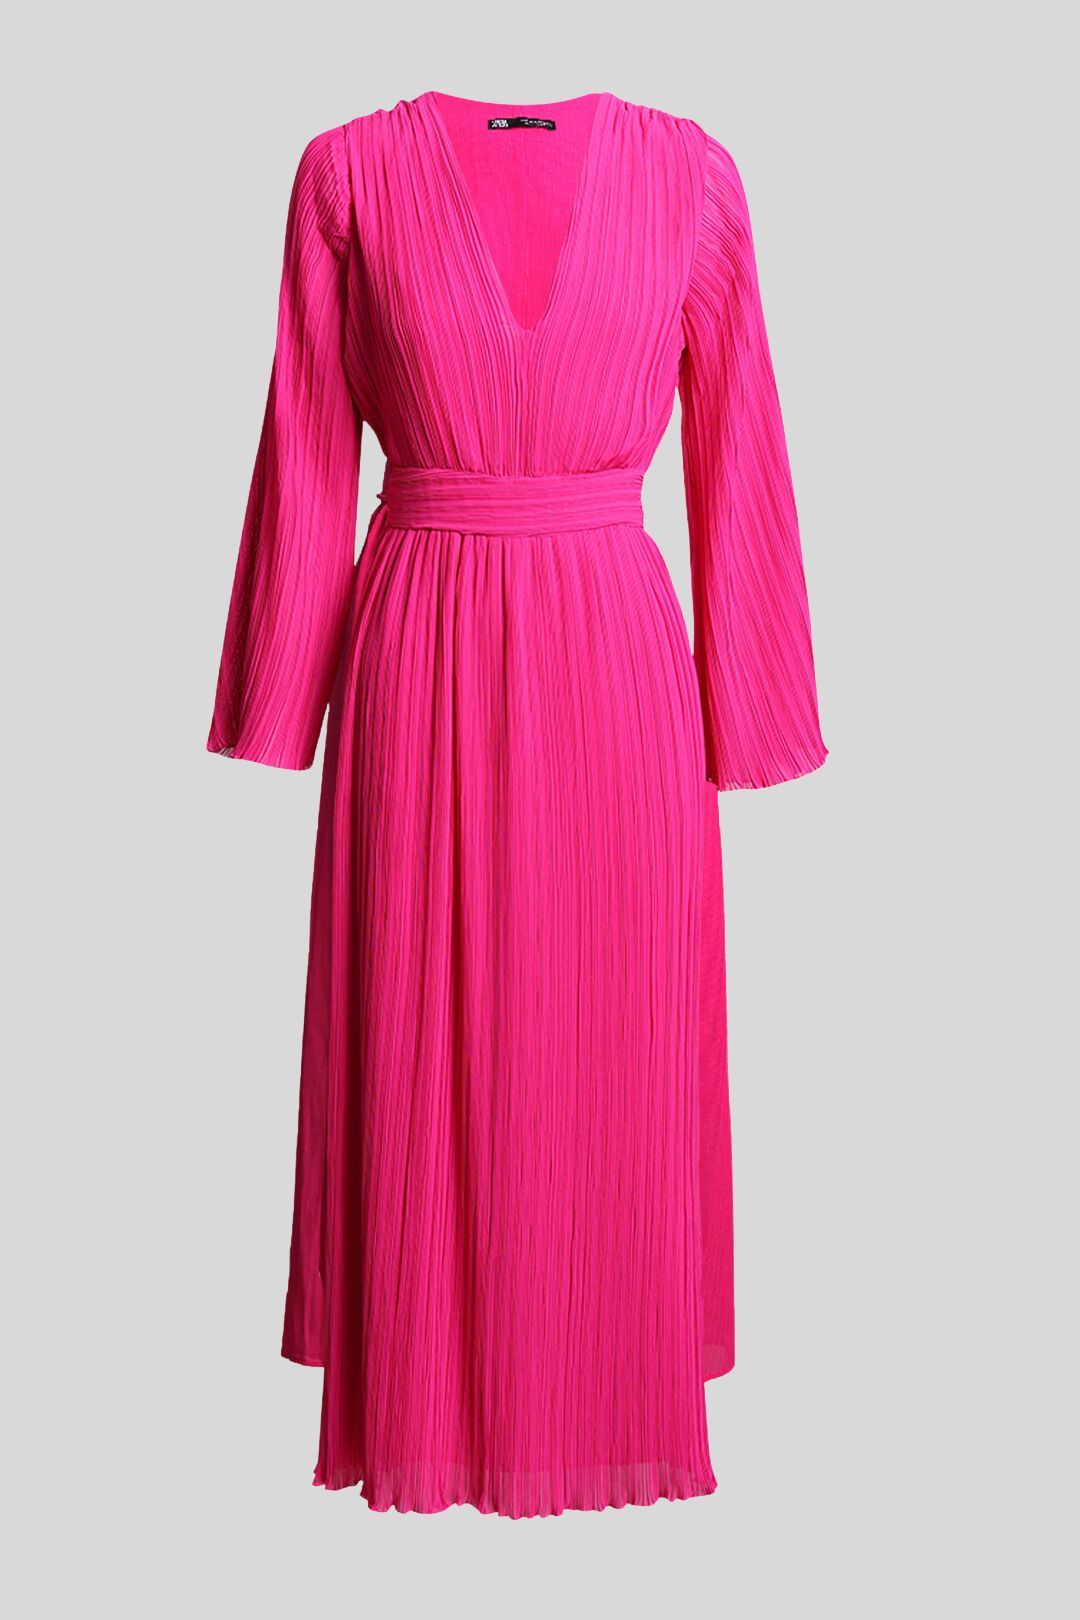 ZARA Fuschia Pink LS Pleated Midi Dress